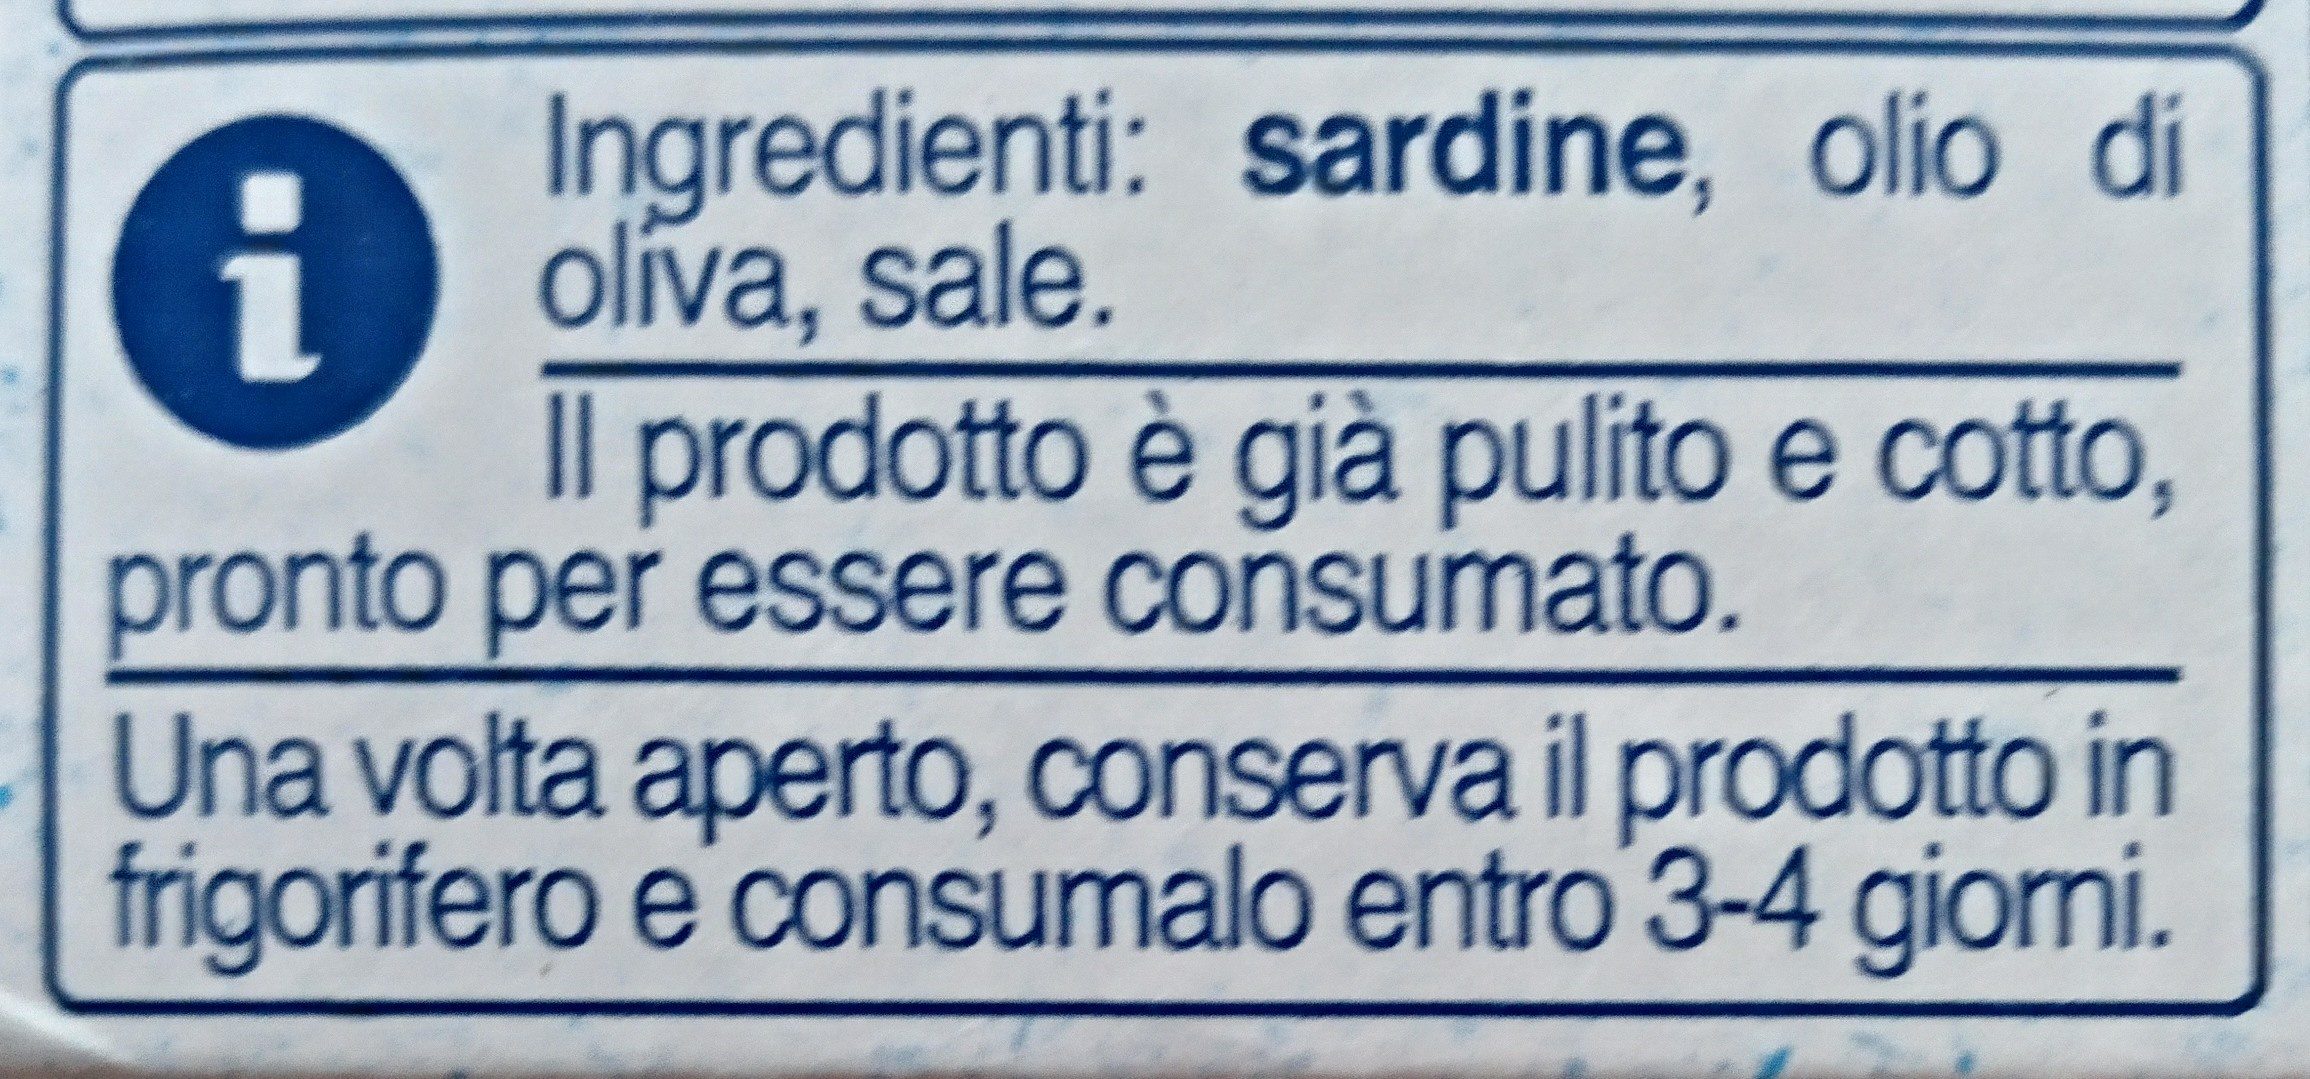 sardine in olio di oliva - Ingredients - fi